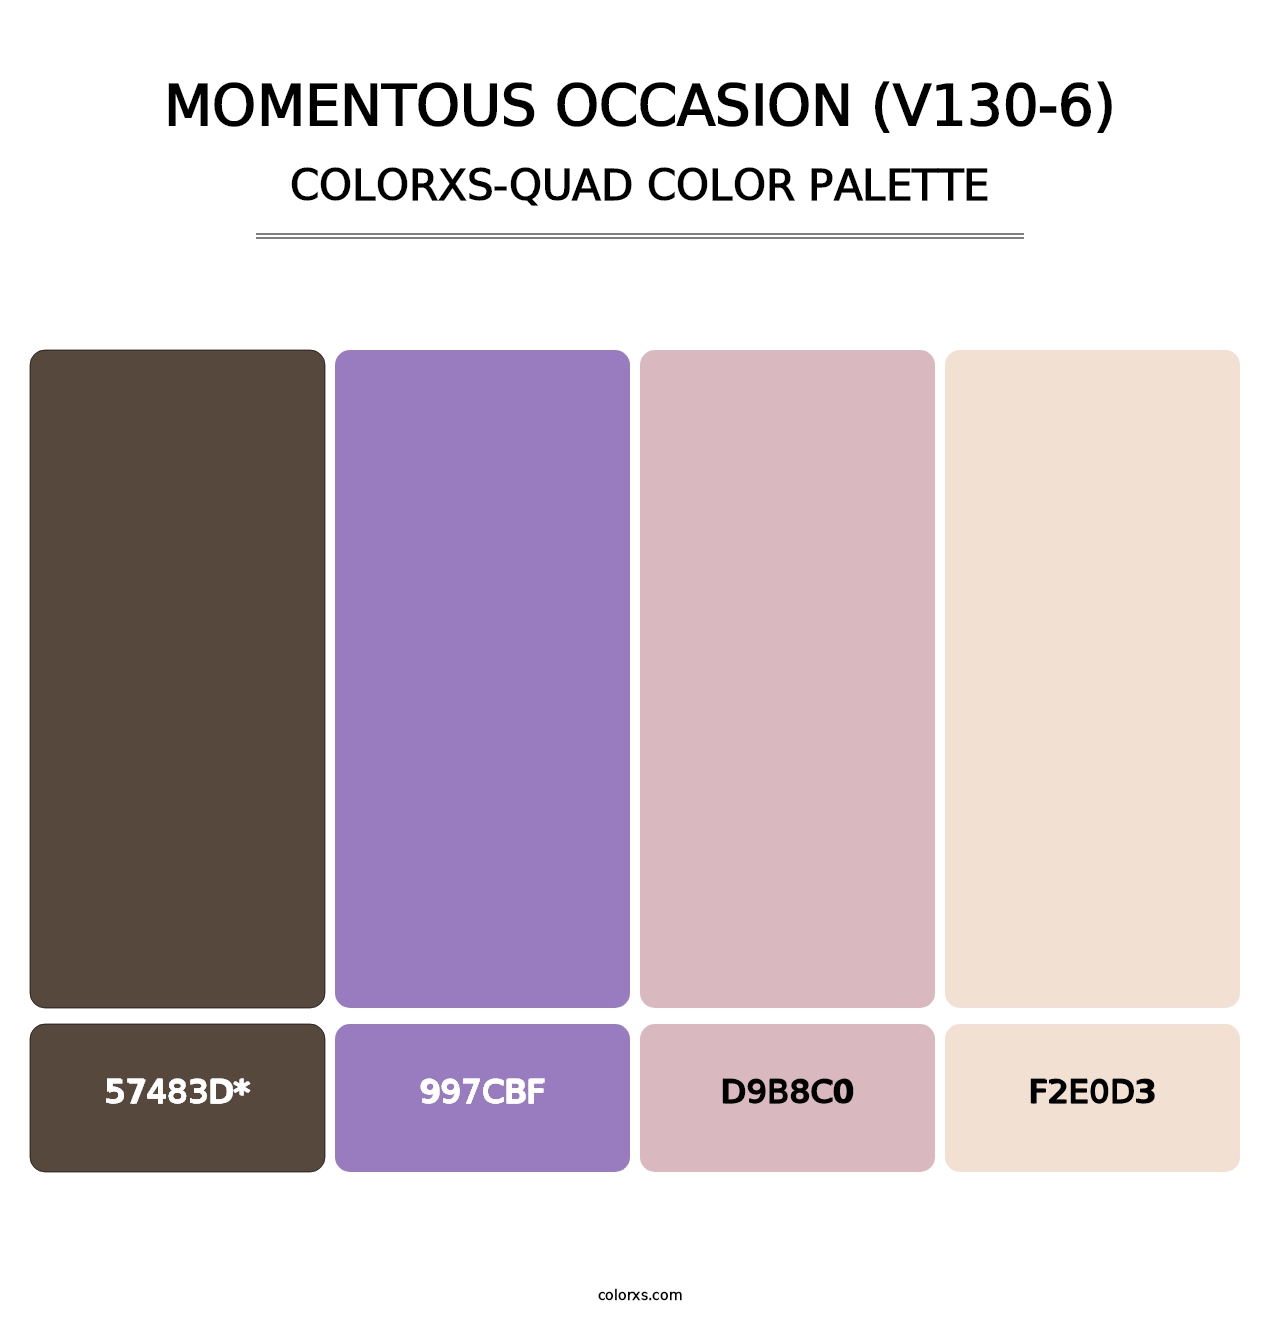 Momentous Occasion (V130-6) - Colorxs Quad Palette